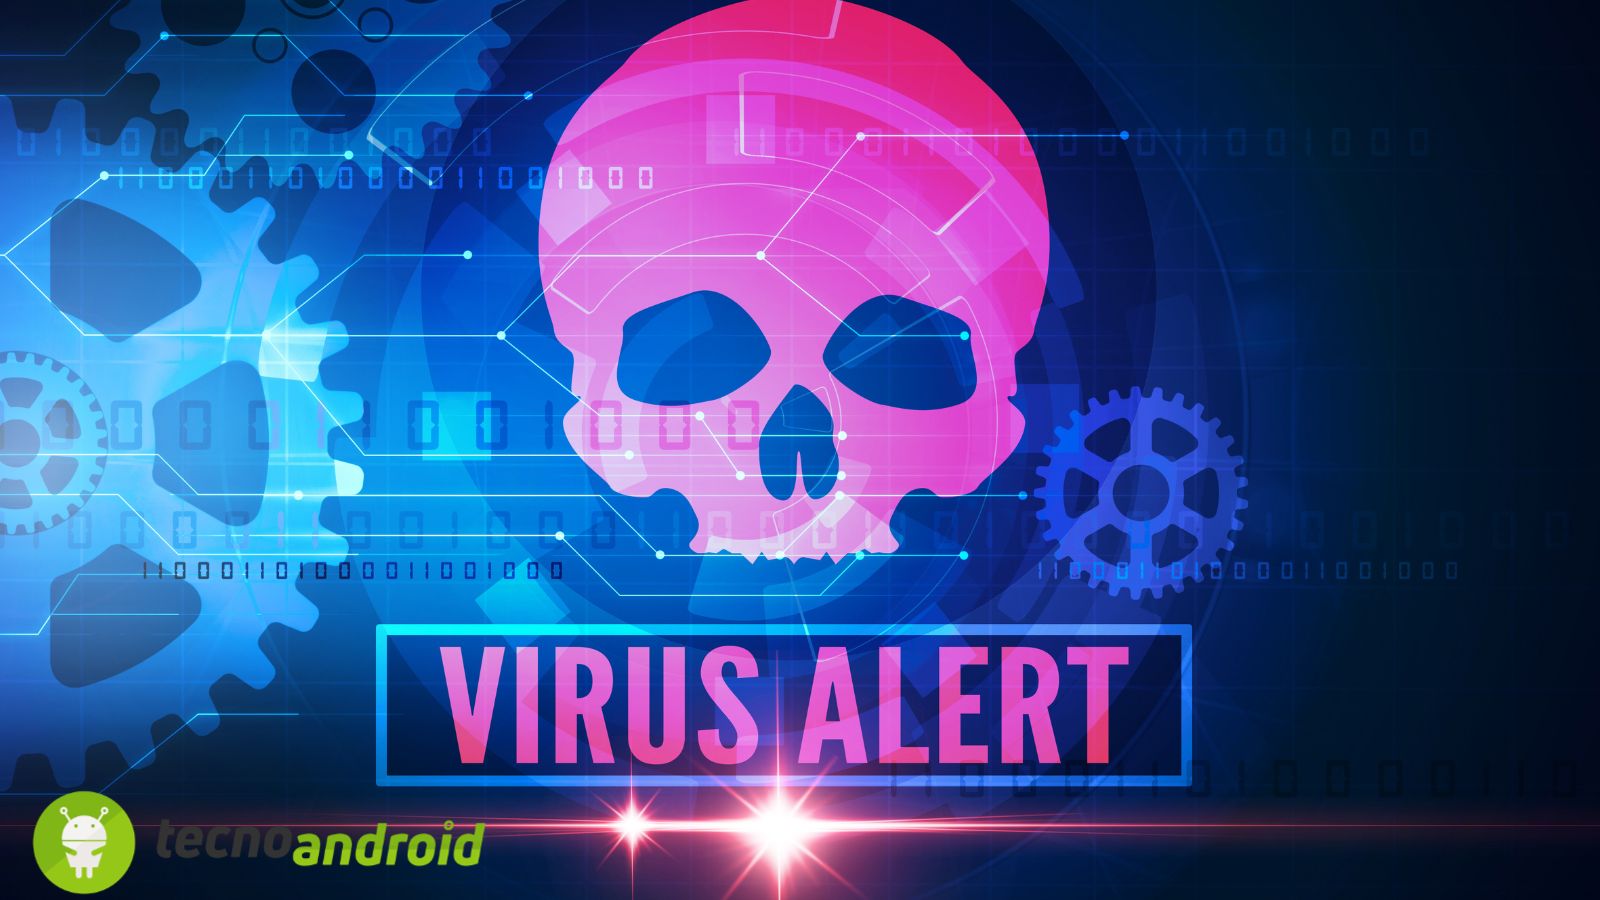 Attenzione: pericolosi VIRUS minacciano di cancellare tutti i vostri dati